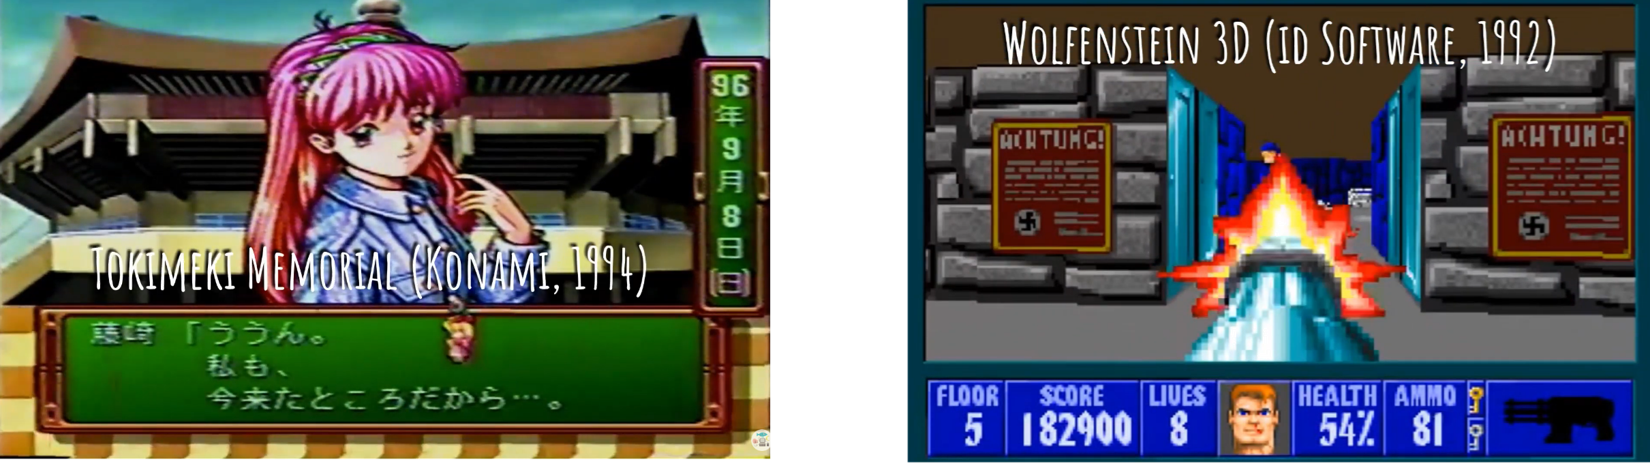 capturas de tela dos jogos "Wolfenstein 3D" (1992, EUA) e Tokimeki Memorial (1994, Japão)